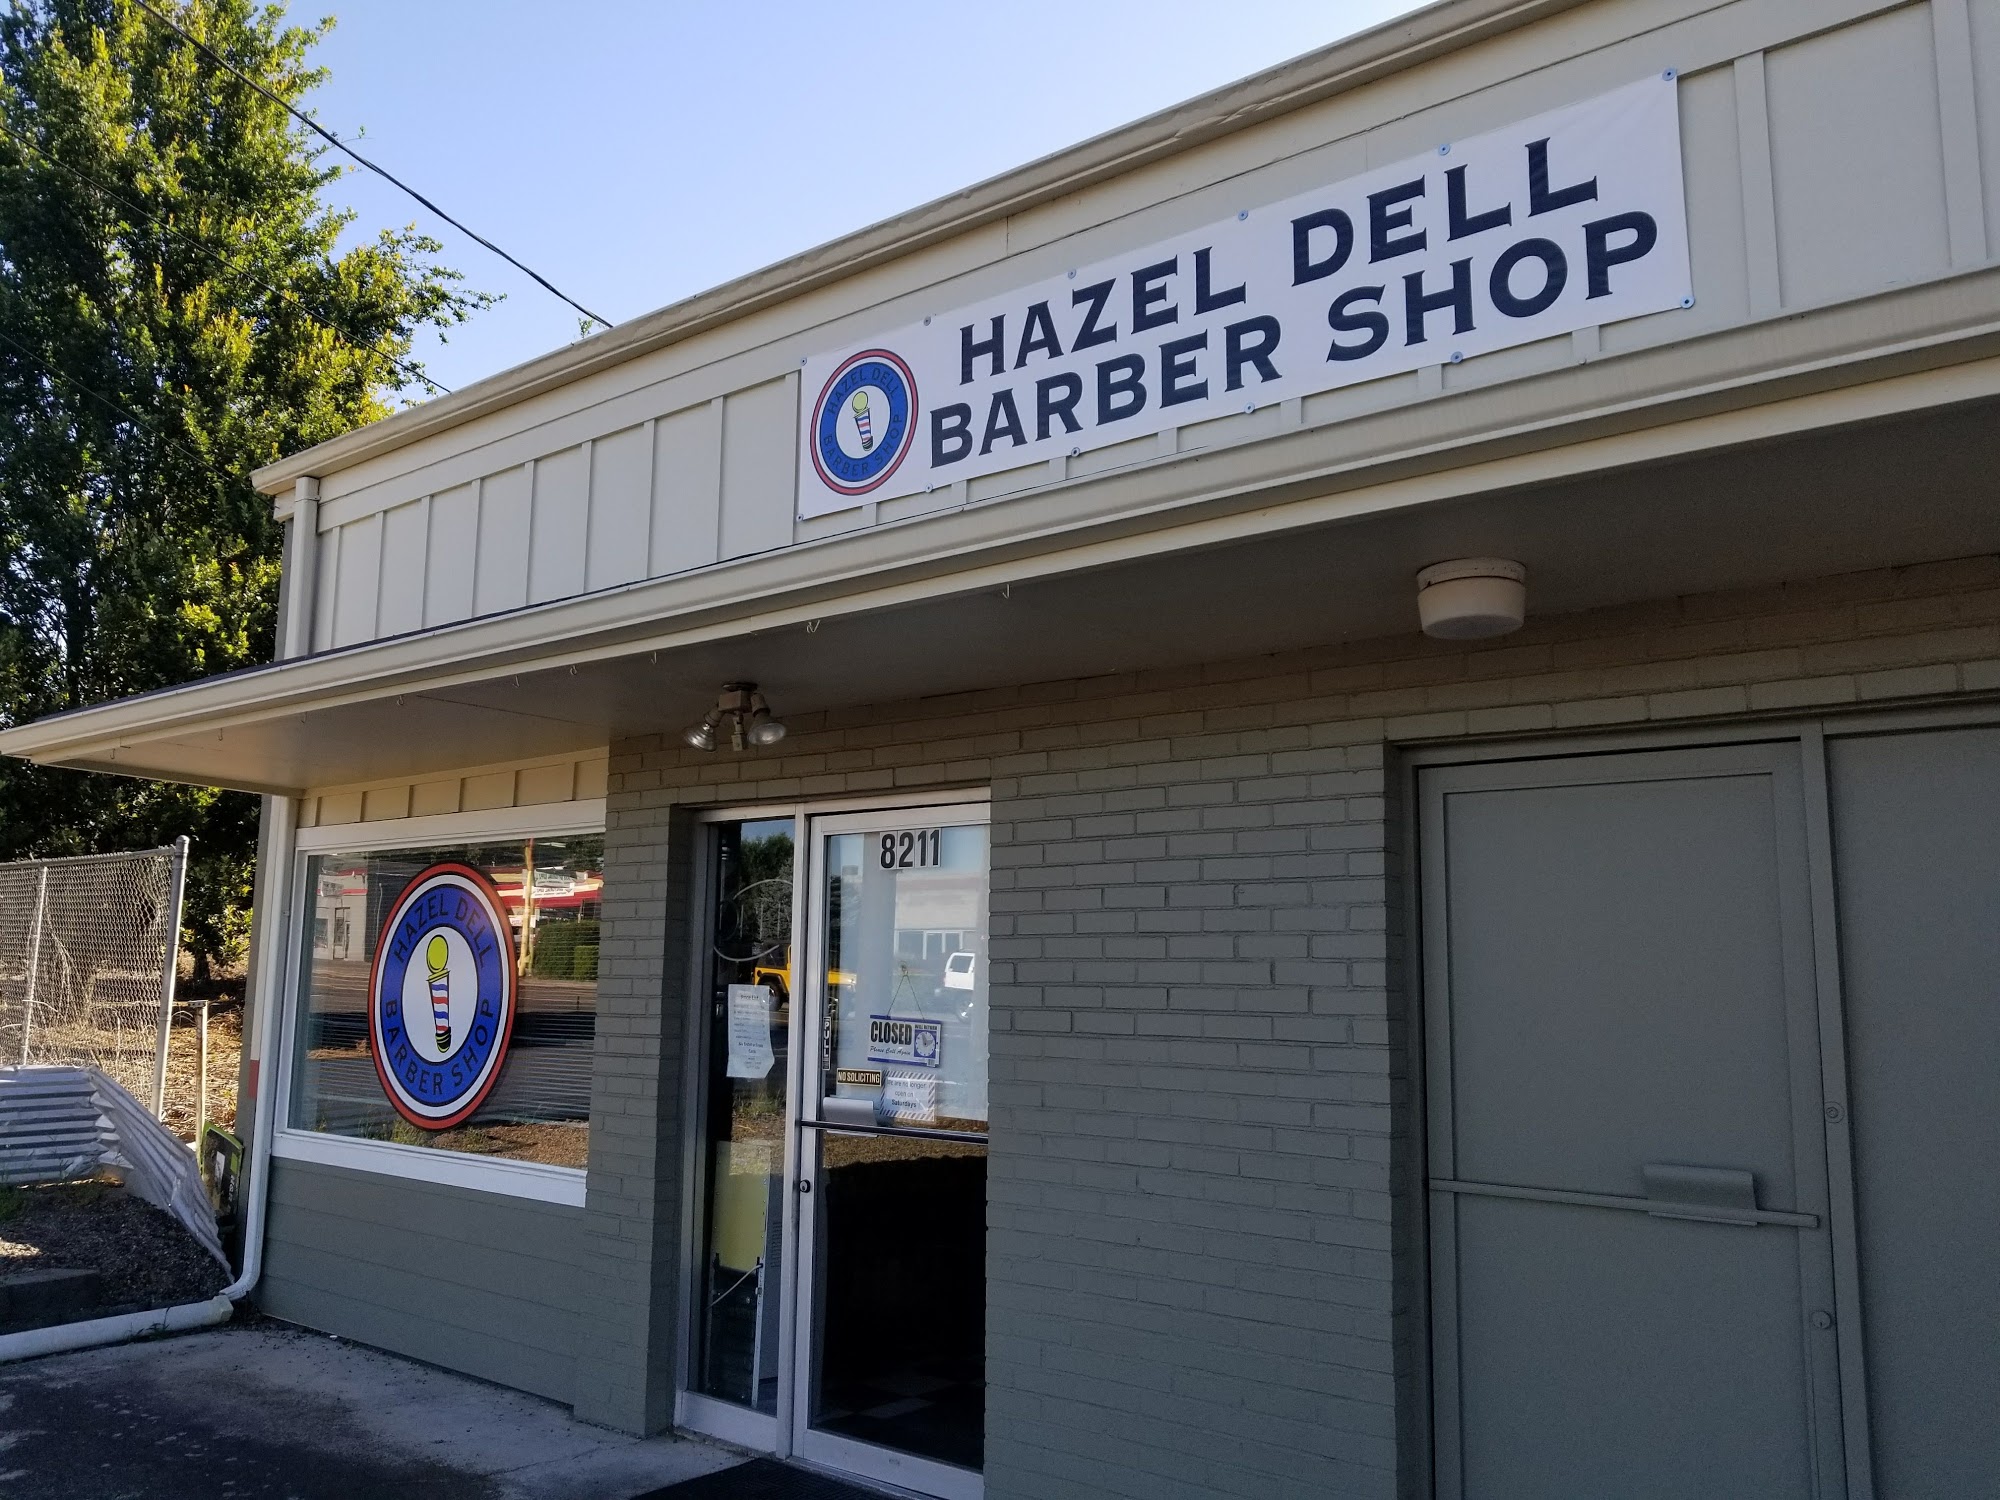 Hazel Dell Barber Shop